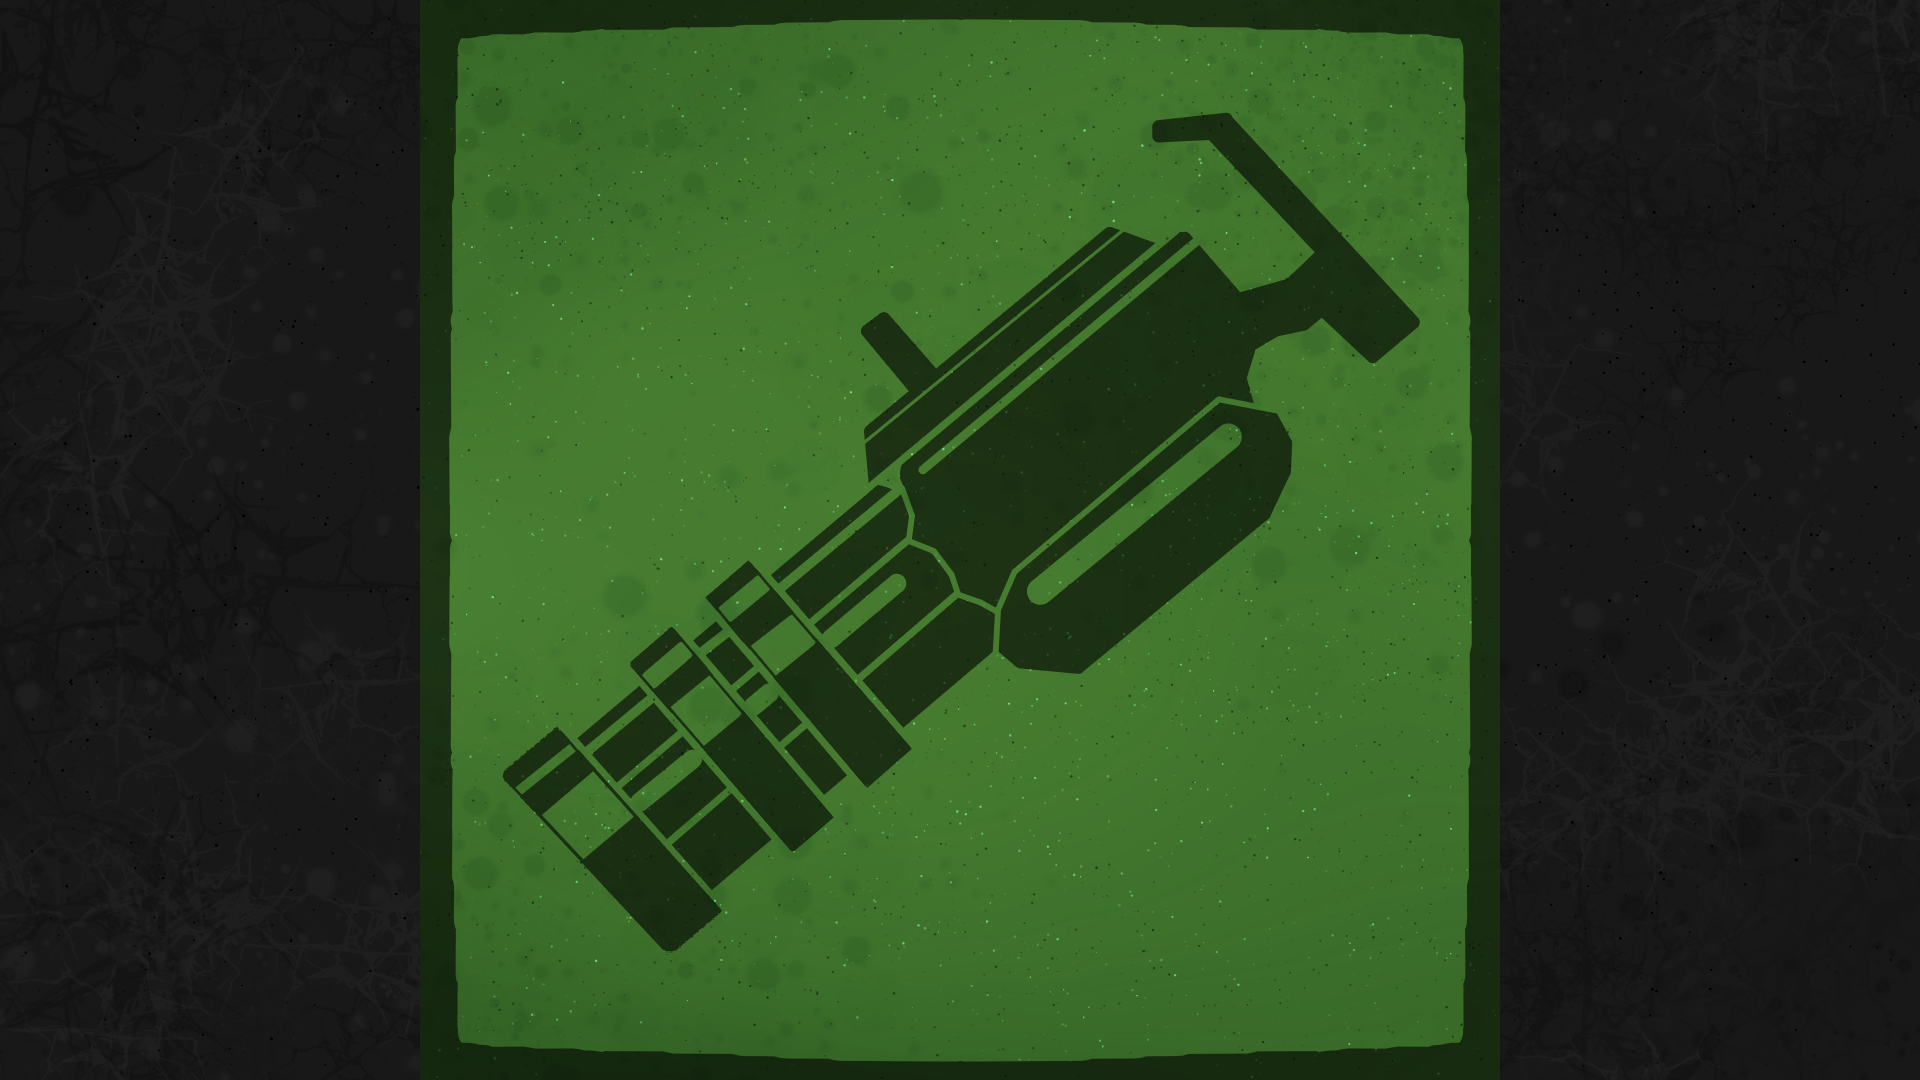 Icon for Minigun